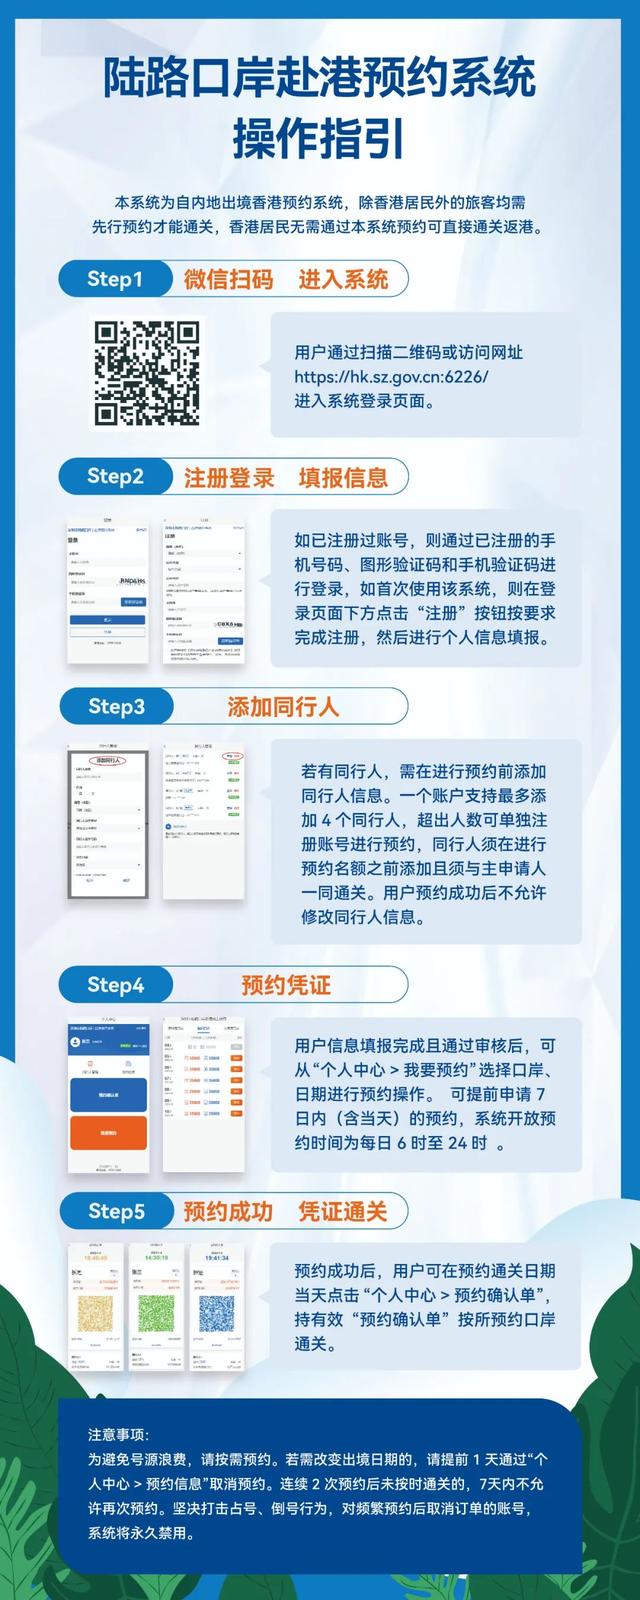 图解｜深圳市陆路口岸赴港预约系统操作指引